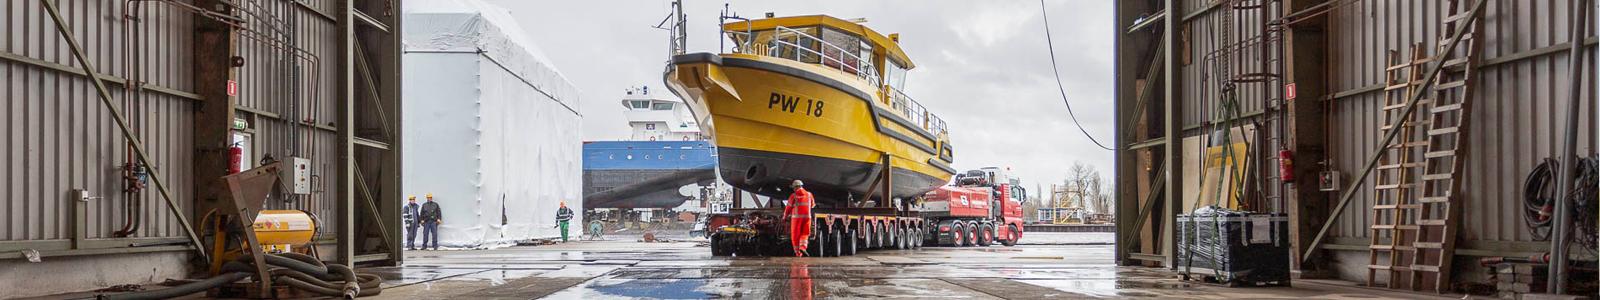 Niestern Sander - Inspectievaartuig Groningen- PW18